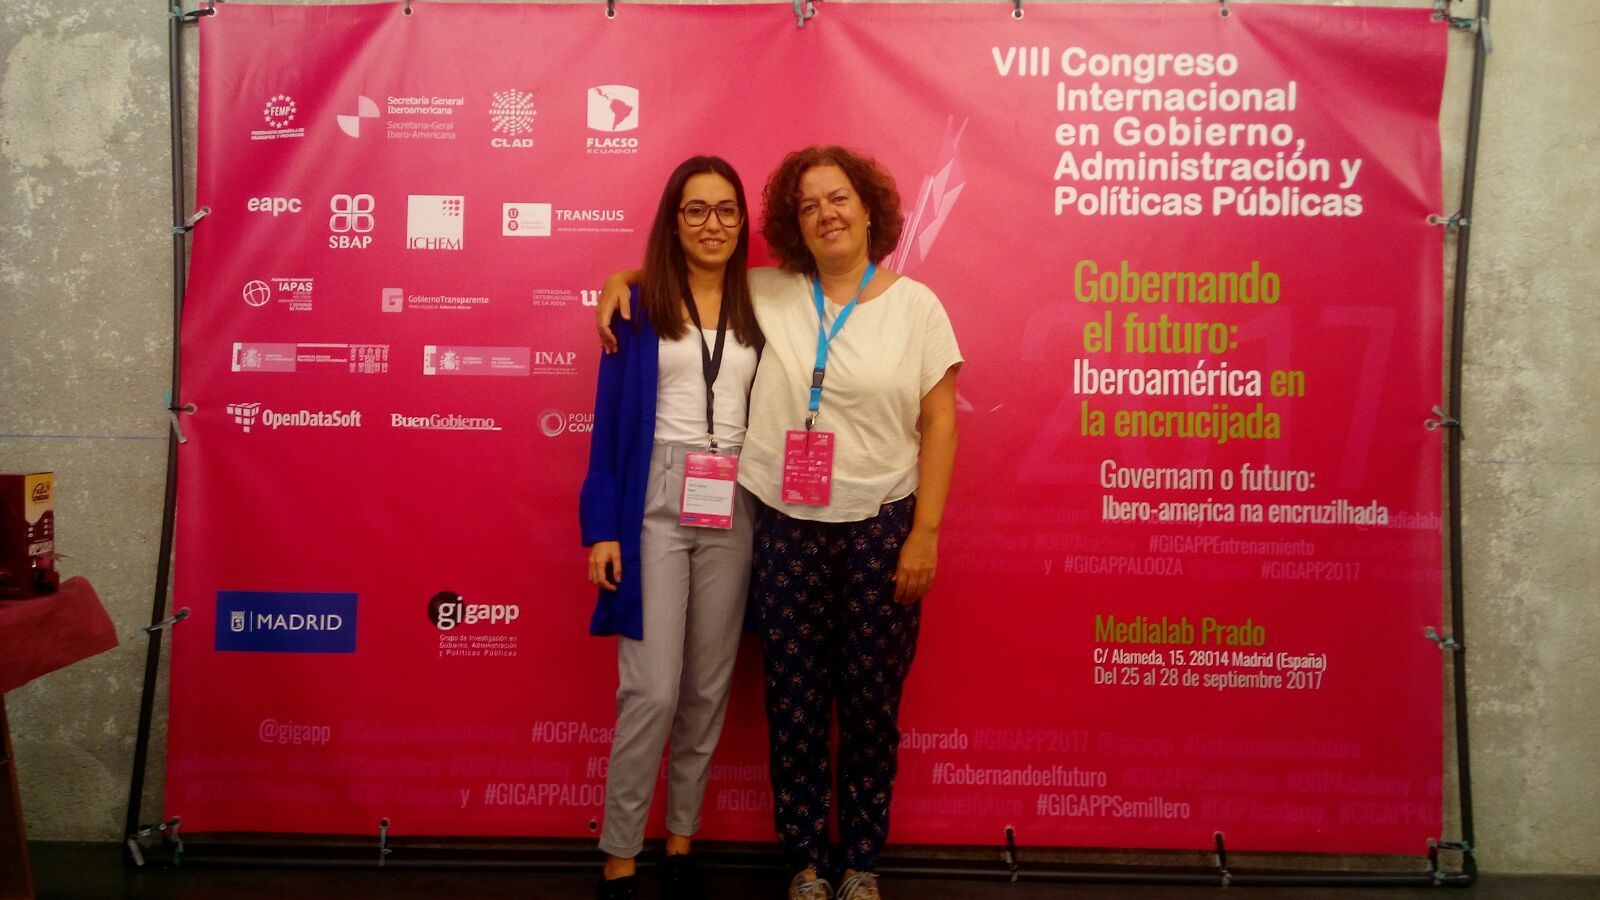  María Velasco y Raquel Santos (UCM-EyP) participan en el VIII Congreso Internacional en Gobierno, Administración y Políticas Públicas de GIGAPP. 25 de septiembre de 2017.